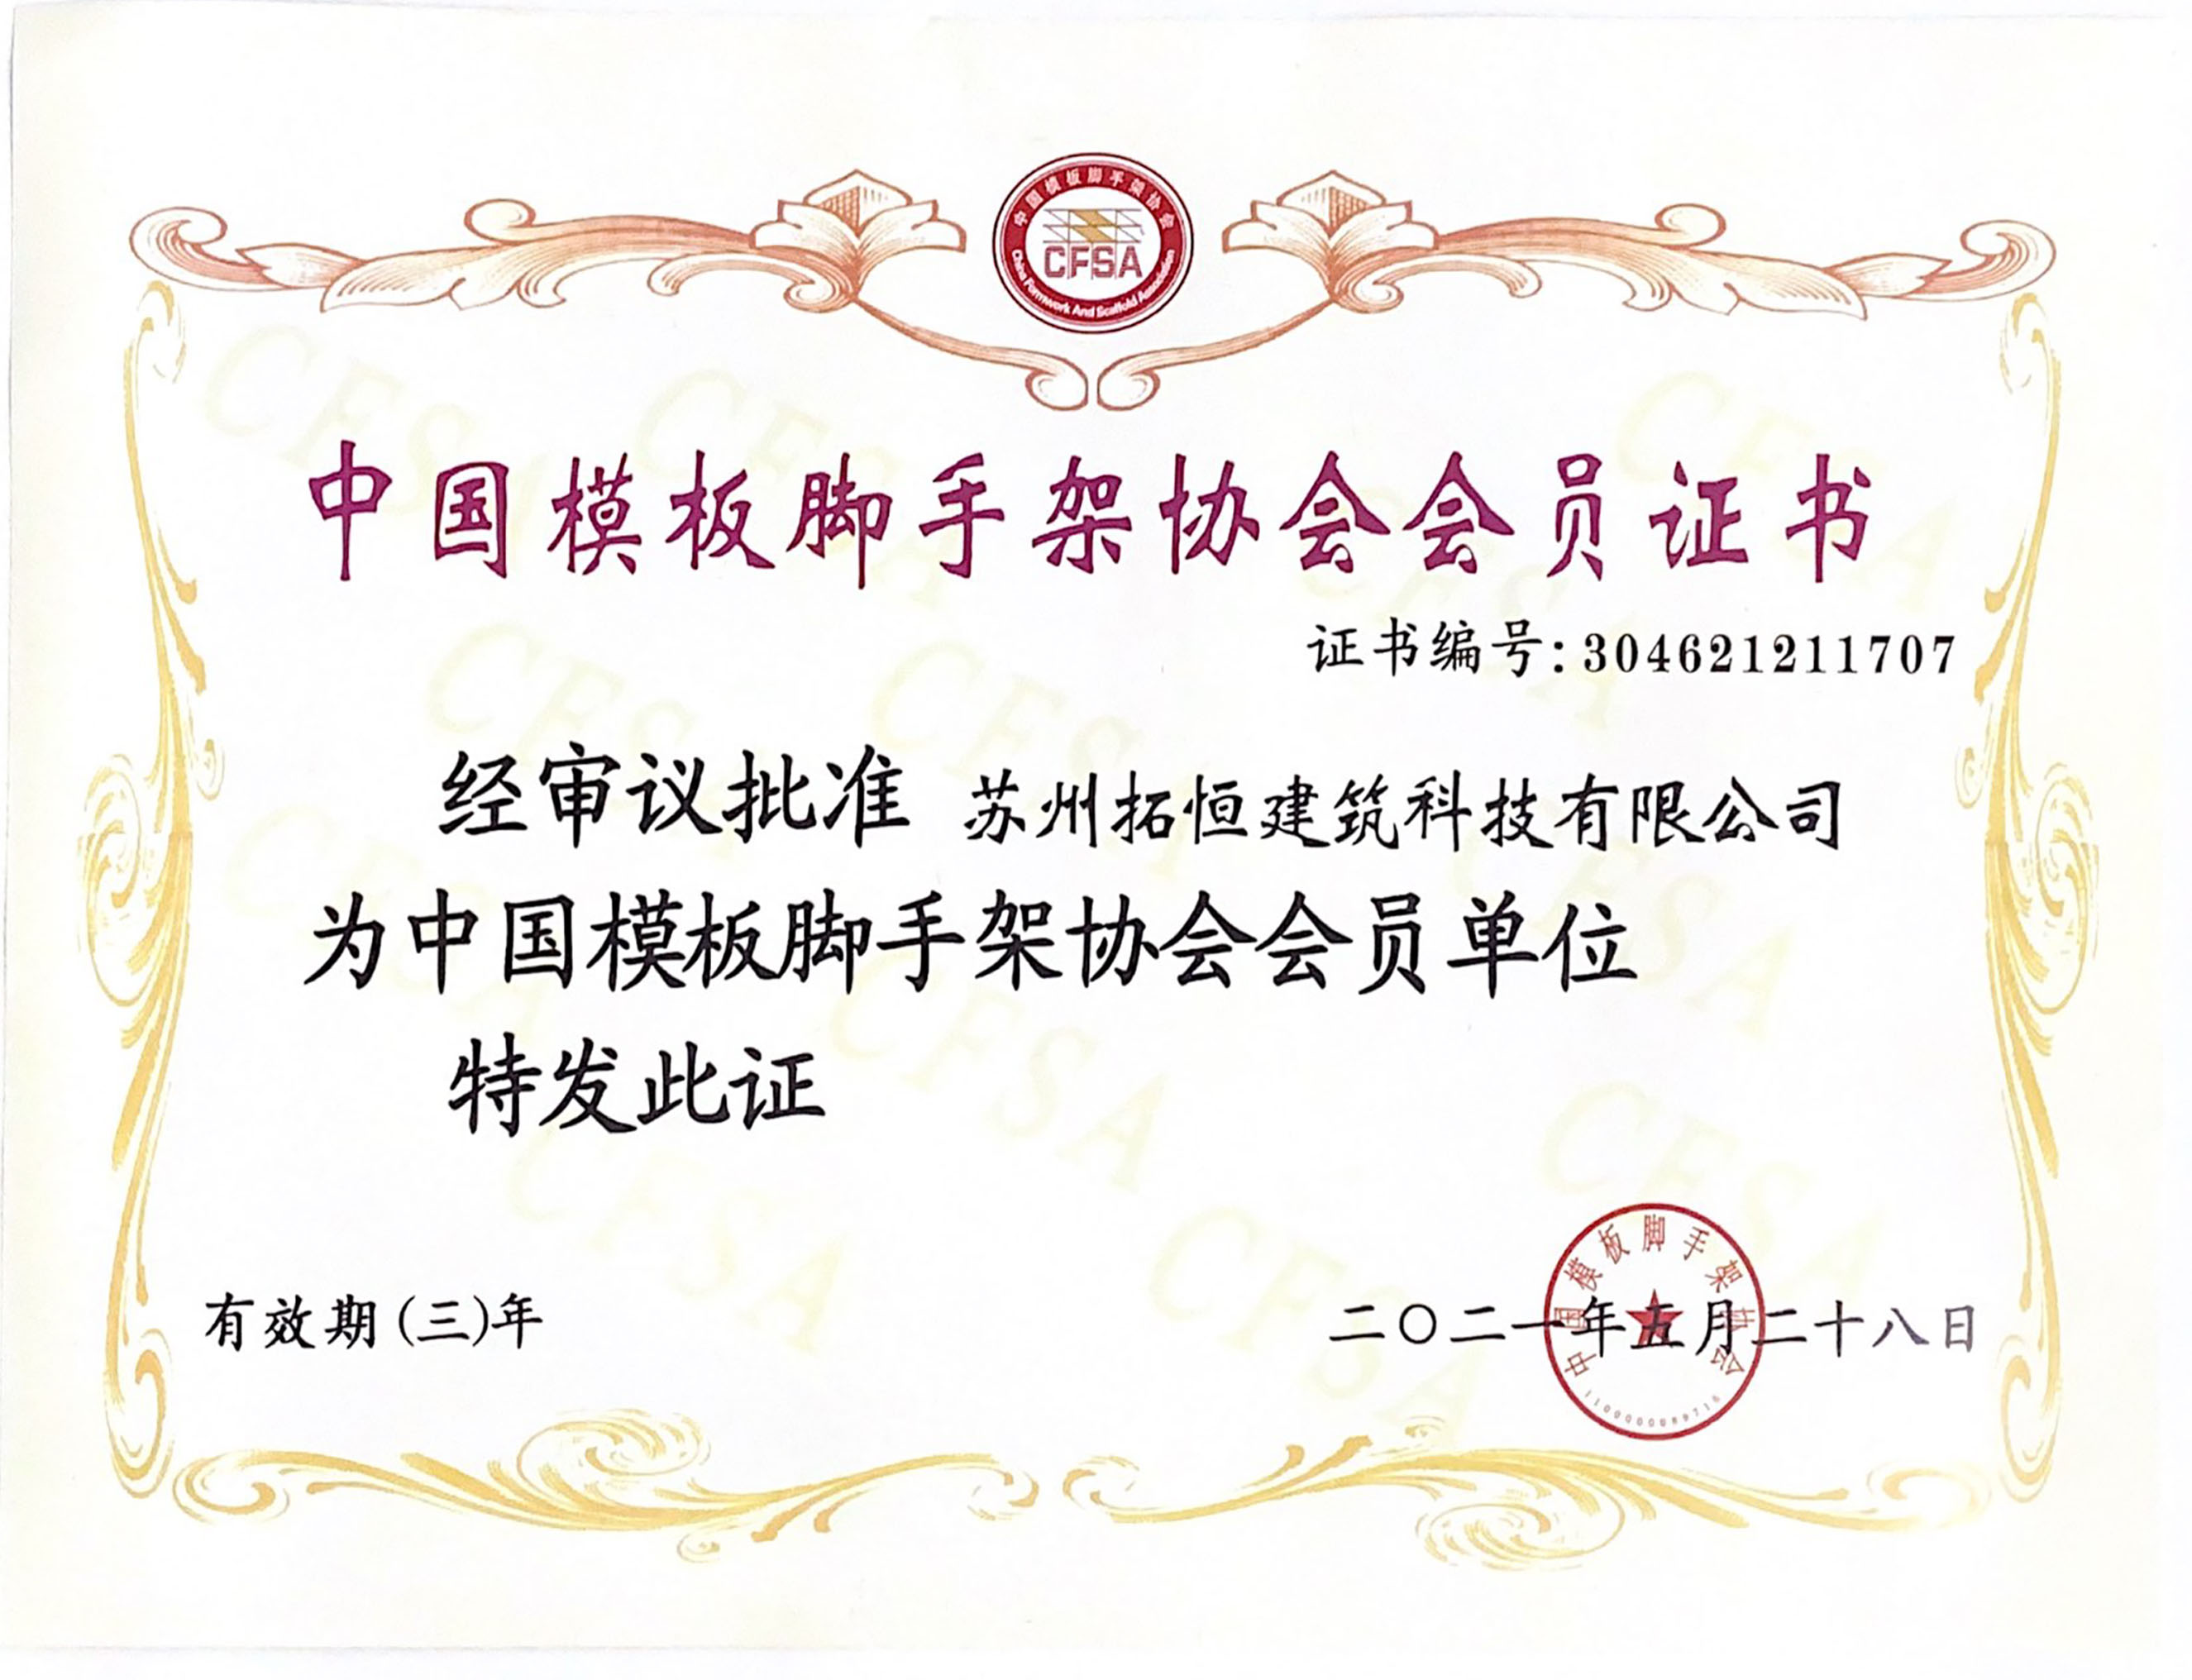 Сертификат членства ассоциации форма-опалубки и ремонтины Китая